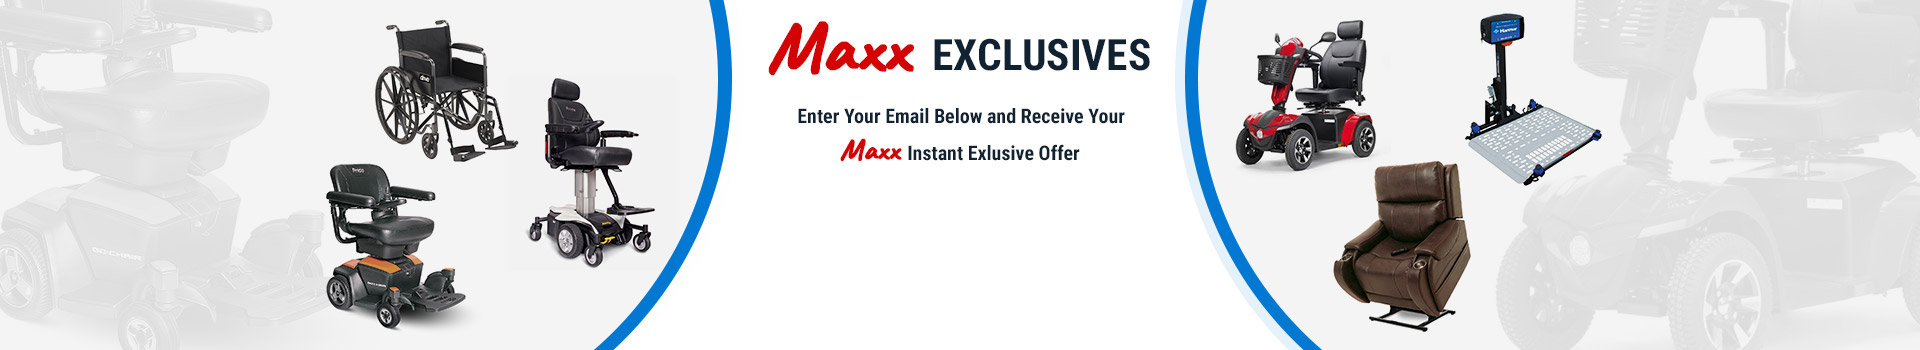 <span class='max'>Maxx</span> Exclusives